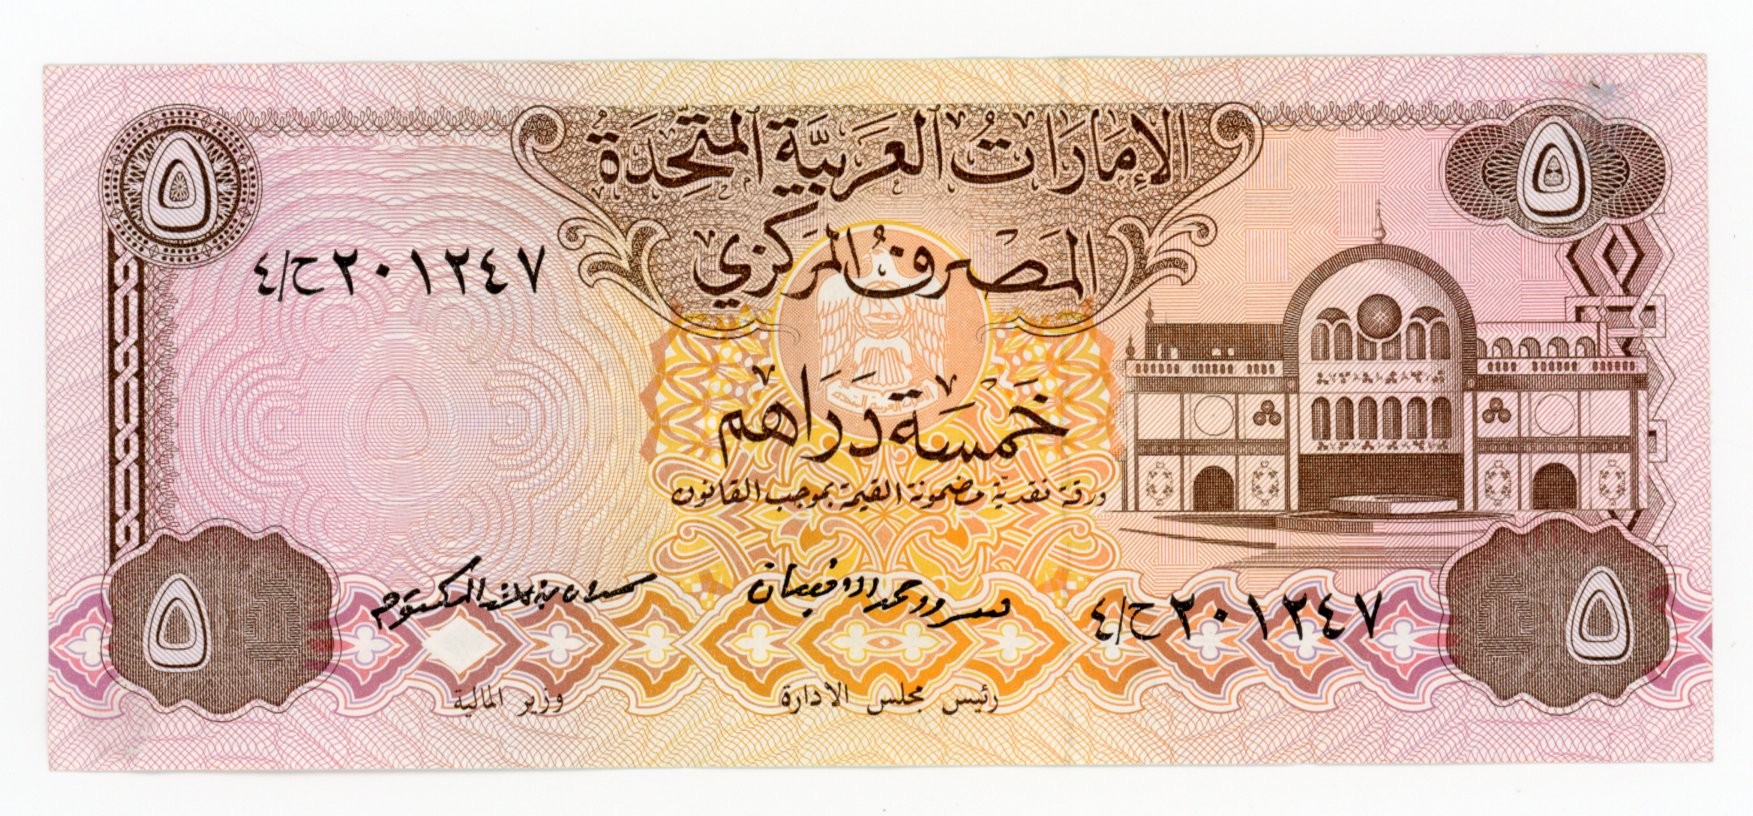 30000 дирхам. Дирхам эмираты купюра. 5 Дирхам ОАЭ. 500 Дирхам ОАЭ банкнота. ОАЭ 50 дирхамов, 1996.